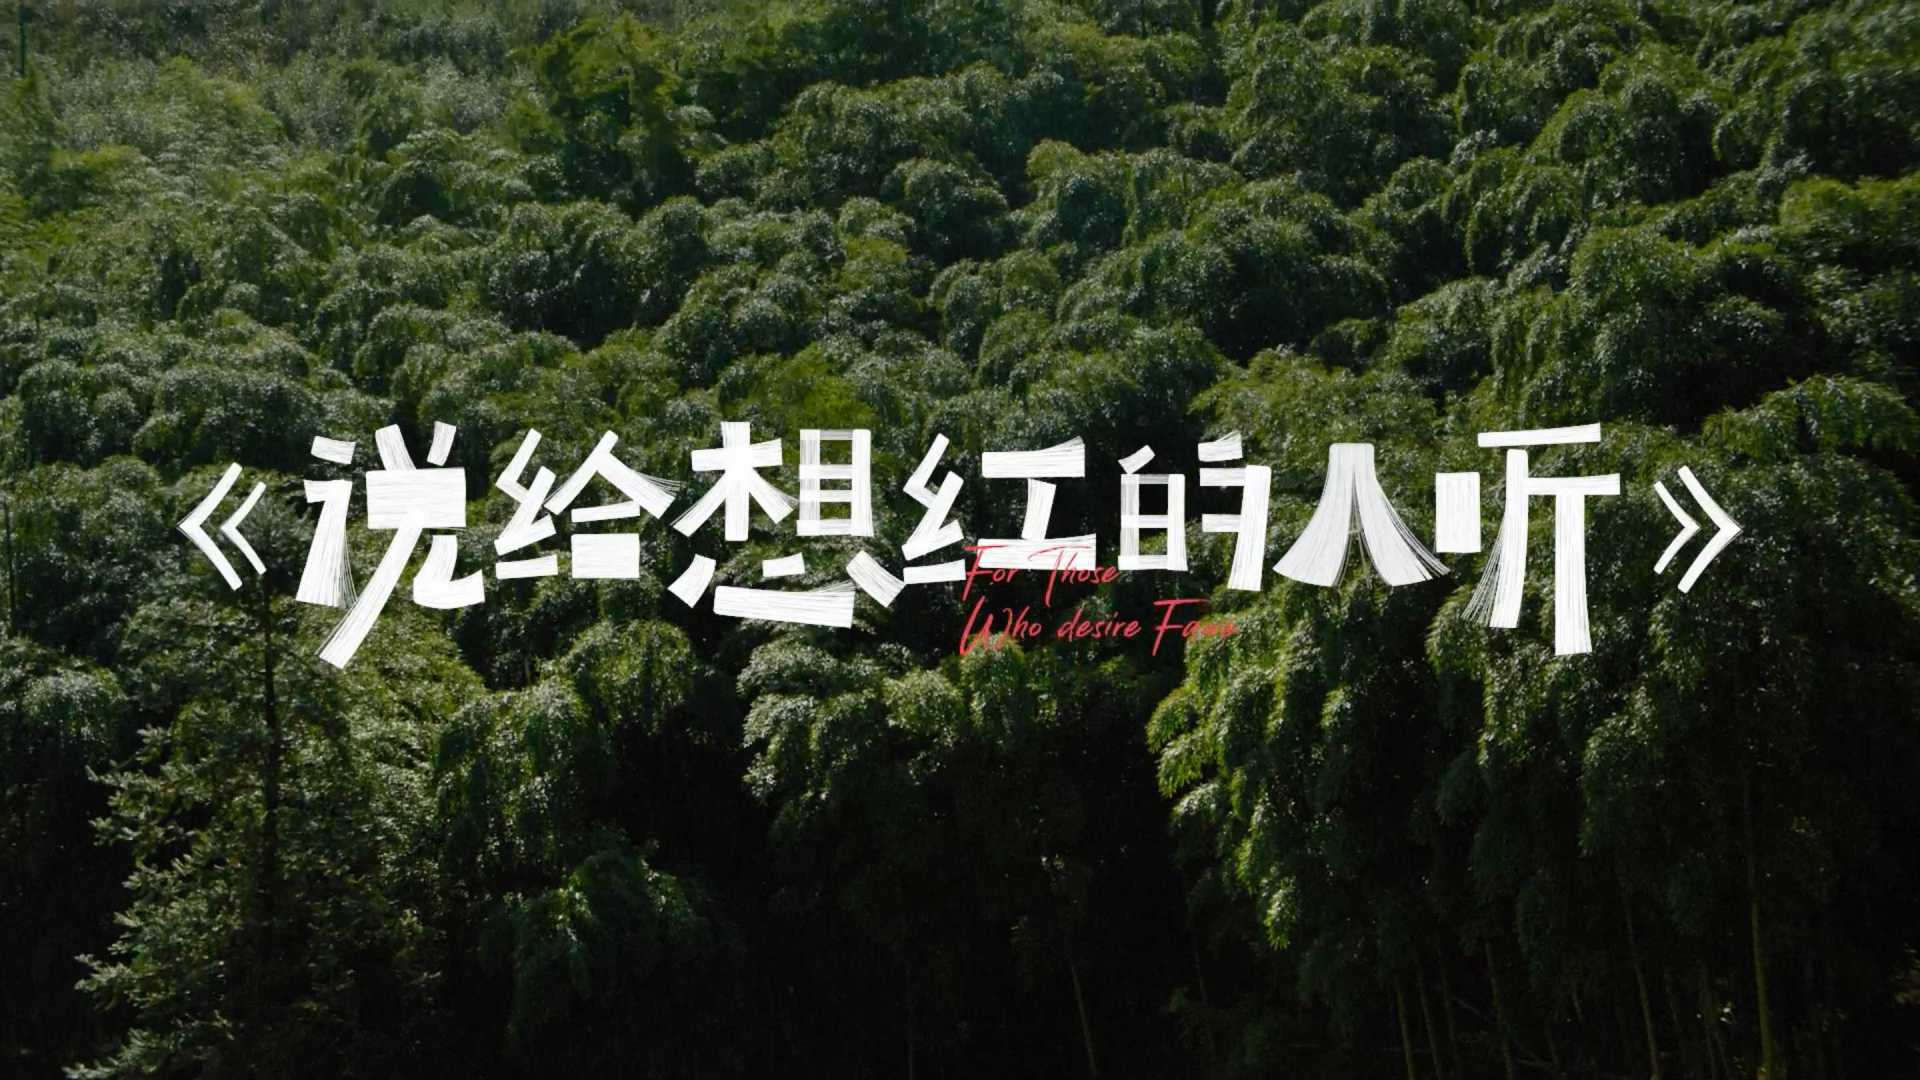 《說給想紅的人聽》#自然一點去露營 纪录片版 by 小紅書 + 張震嶽 + W